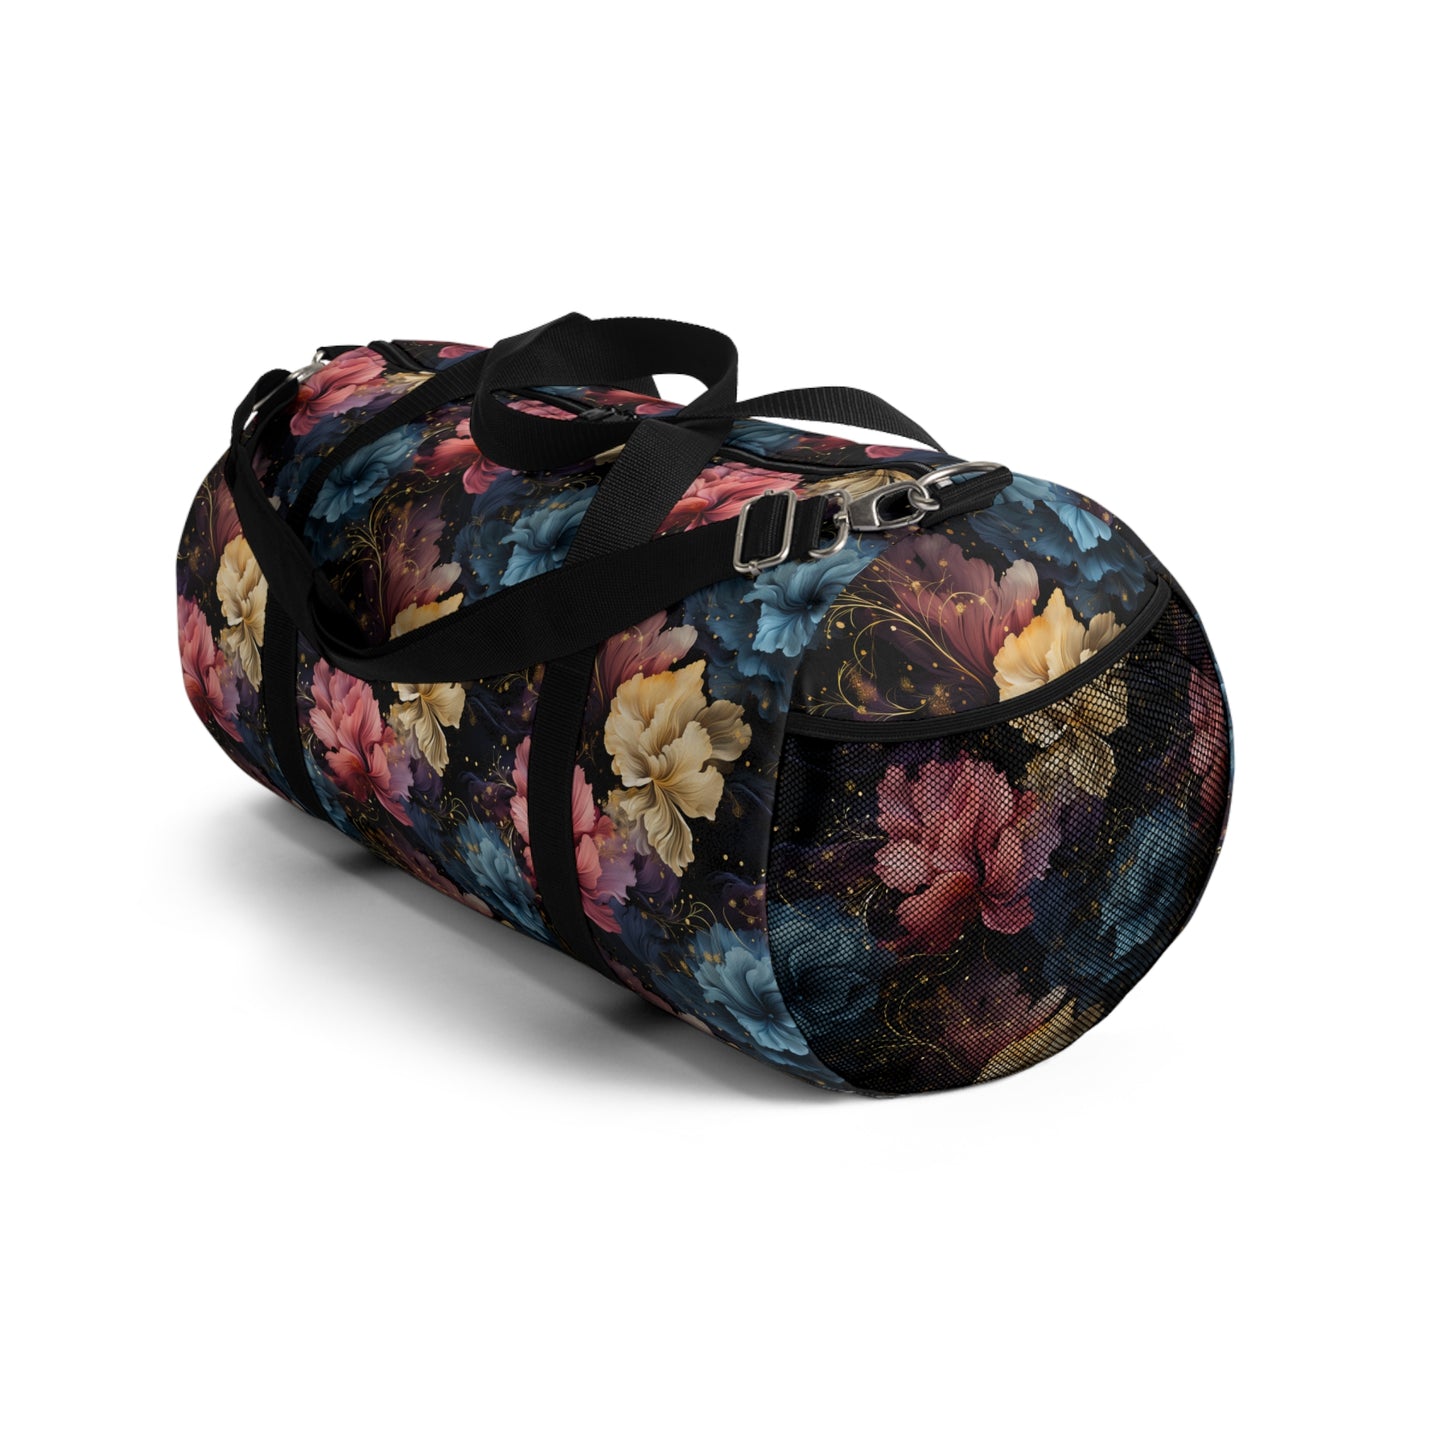 Flowers in Cosmic Duffel Bag